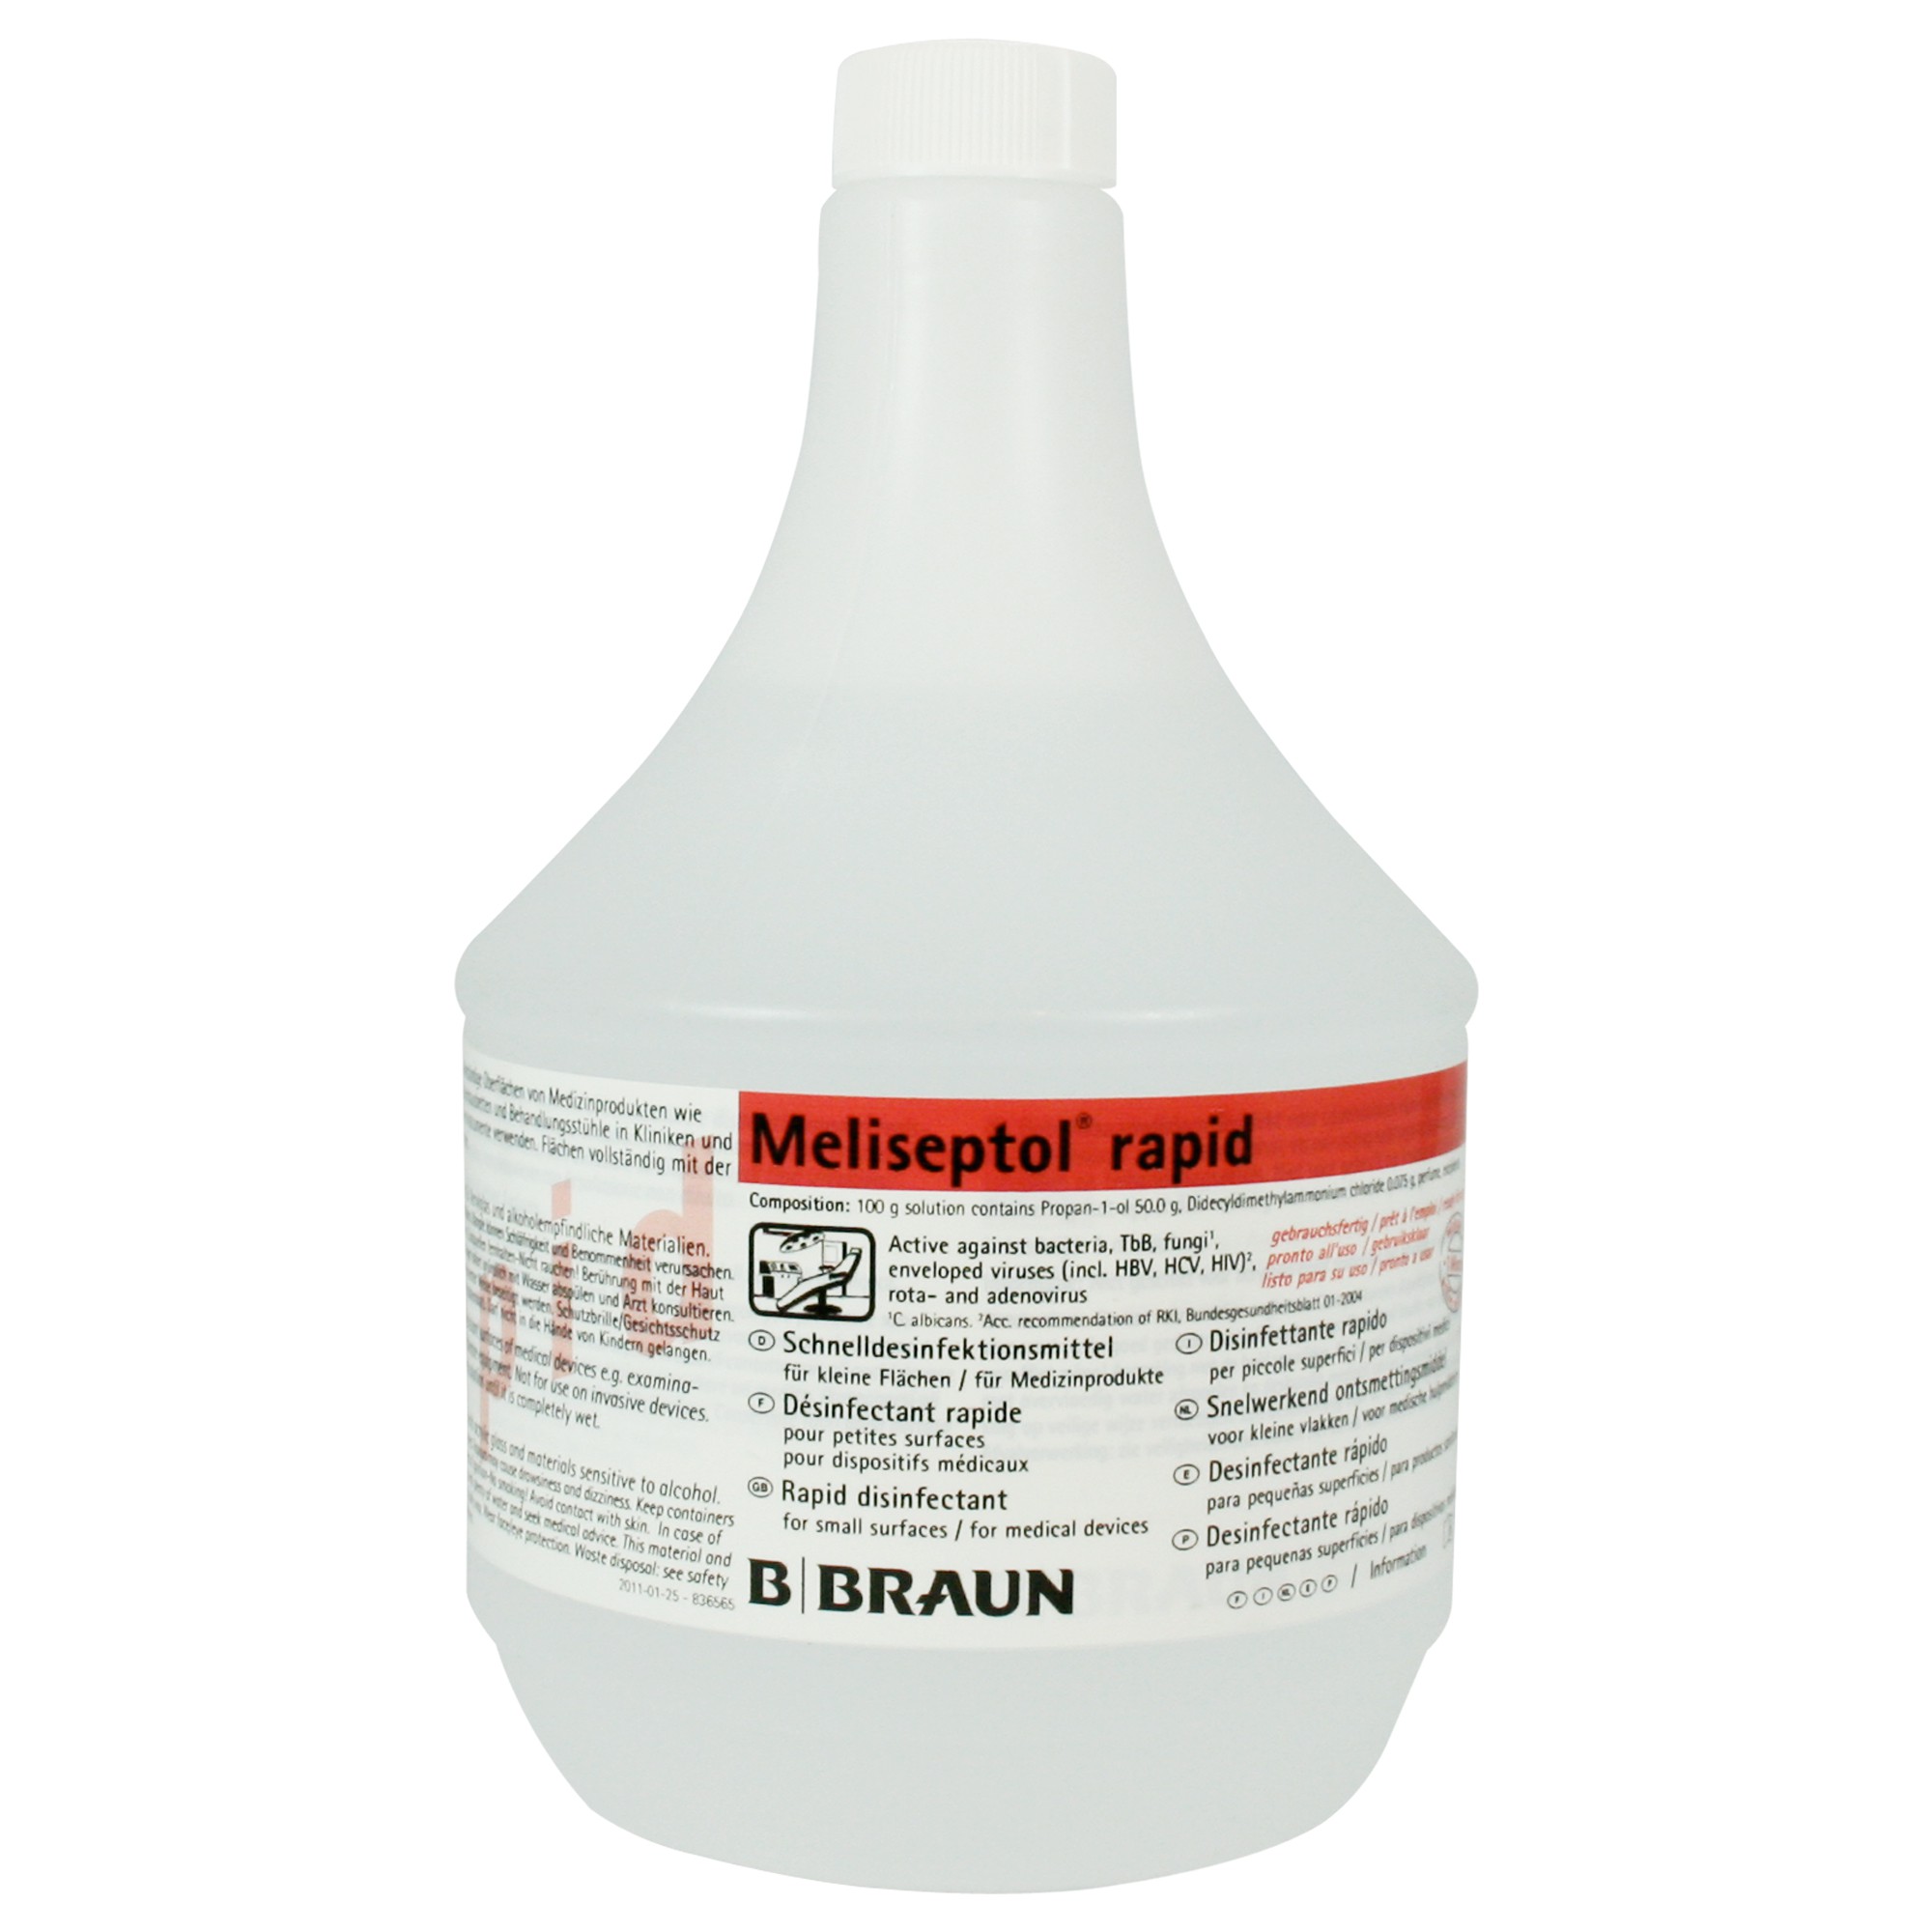 BRAUN Meliseptol® rapid 1000 ml